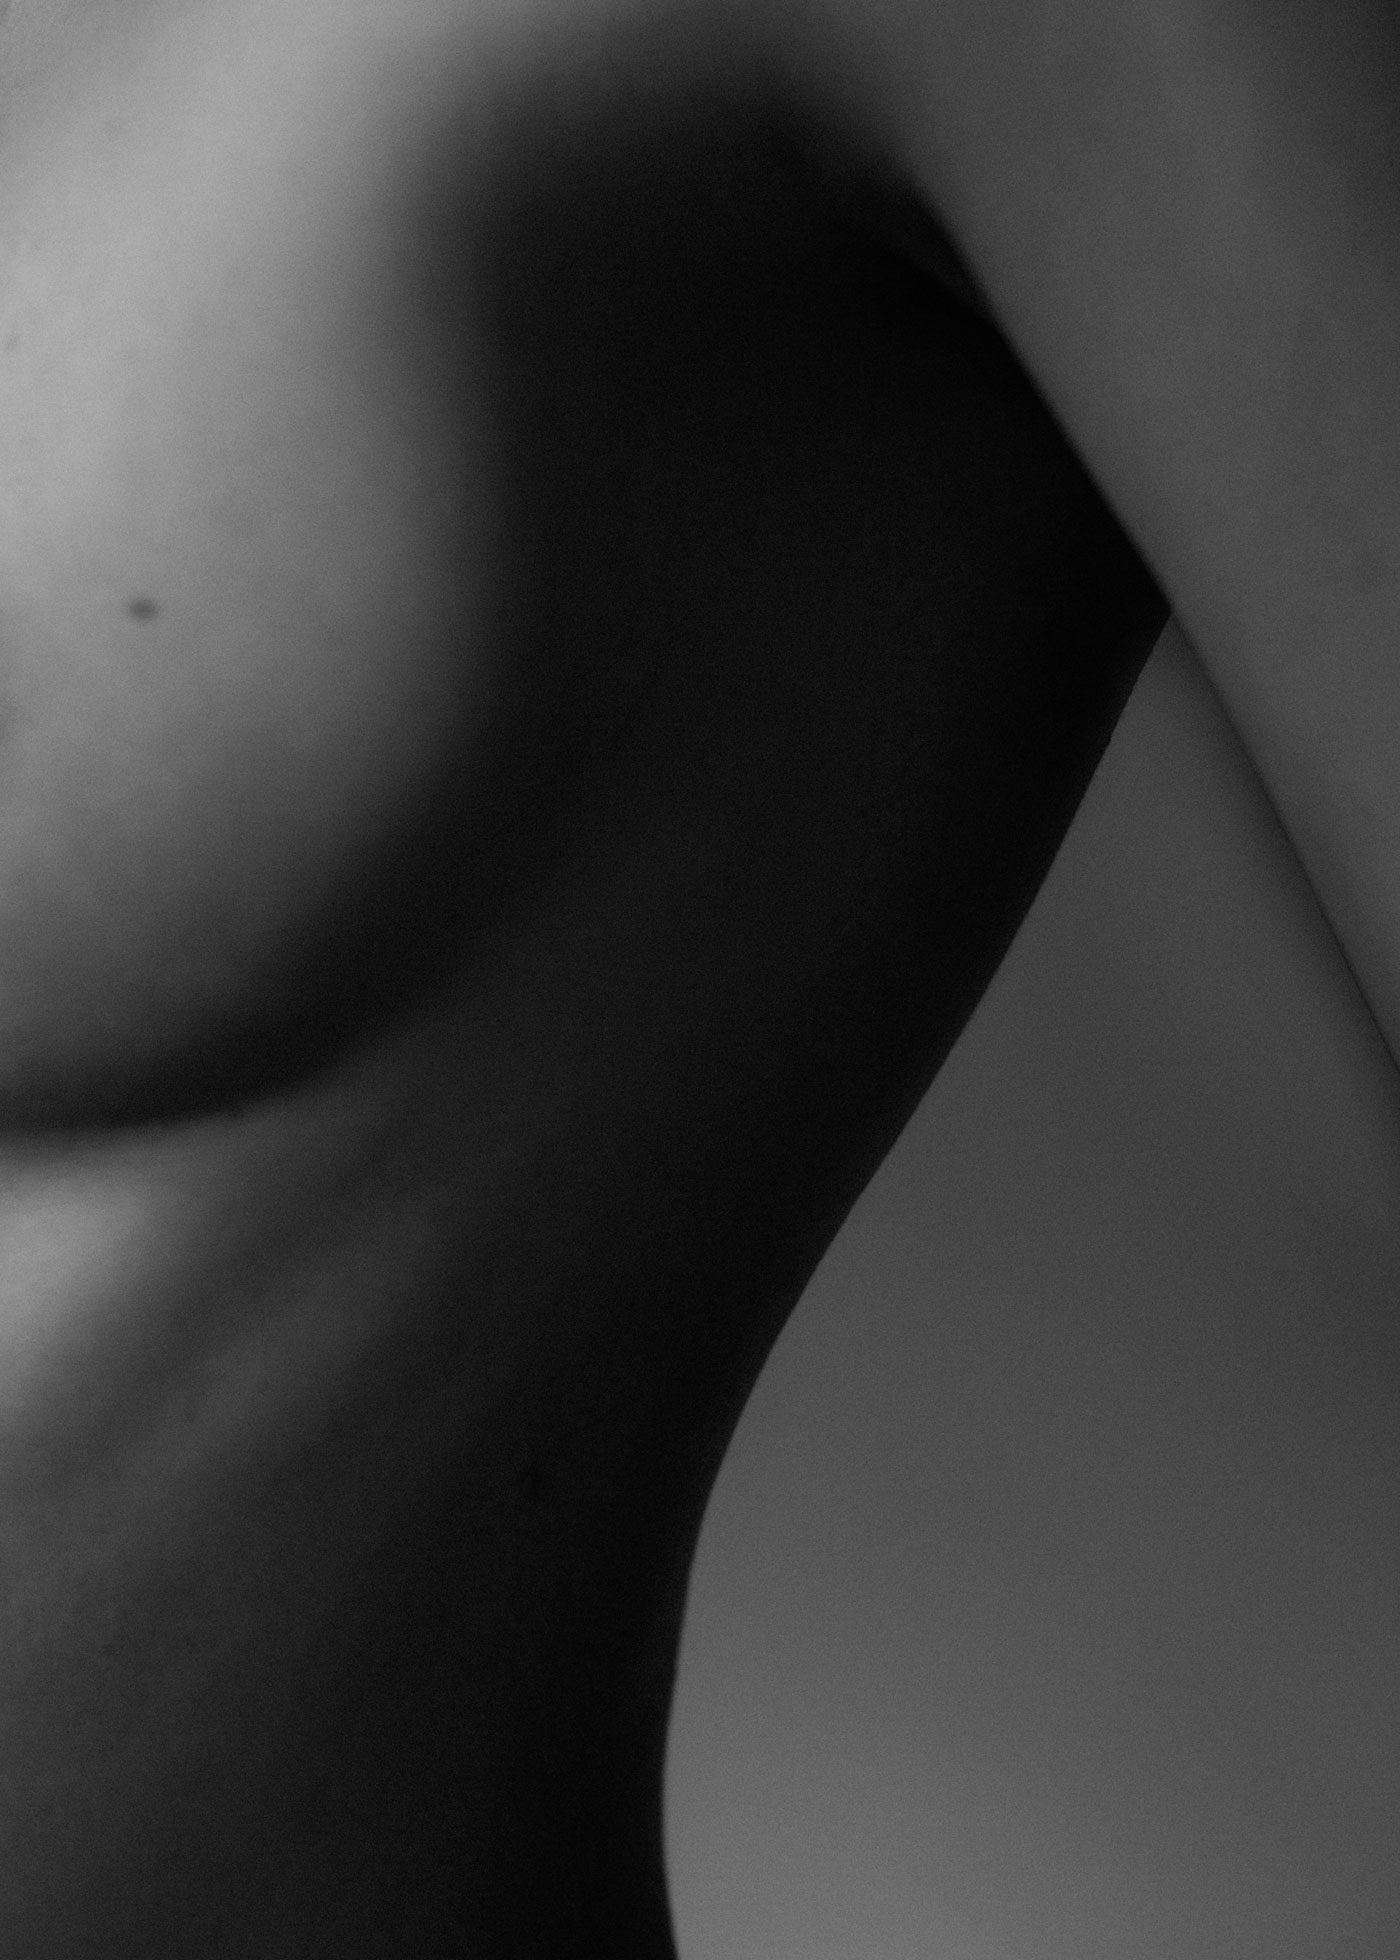 Schwarz-weiß Foto einer nackten Brust und einer sportlichen Taille einer schönen, jungen Frau im Halbseitenprofil - auf der Seite "Leistungsspektrum" von www.hanseatic-facelift.de unter der Rubrik "Brustvergrößerung mit Eigenfett" - "Eine Methode, die in ausgewählten Fällen angewendet werden kann, ist die Vergrößerung durch Injektion von Eigenfett in die Brust – nach Entnahme aus Bereichen, in denen Überschüsse vorhanden sind. Es sind oft mehrere Sitzungen erforderlich, bis das gewünschte Volumen erreicht ist. Lipotransfer, Lipoimplantat oder Lipofilling der Brust ermöglicht es, das Volumen der Brust mit dem Fett der Patientin aus anderen Körperbereichen zu vergrößern, ohne Silikonprothesen verwenden zu müssen. Für die Brustvergrößerung mit Eigenfett wird Ihr eigenes Fett aus Spendebereichen – meist Hüften, Beine oder Bauch – entnommen, in einer Zentrifuge aufbereitet und dann mit einer kleinen Kanüle transplantiert. Der Eingriff dient der natürlichen Vergrößerung der Brust und eignet sich besonders zur Brustrekonstruktion, als ergänzende Methode zur Behebung von Unregelmäßigkeiten in einer rekonstruierten Brust sowie zur Vorbereitung der Haut nach einer Strahlentherapie".